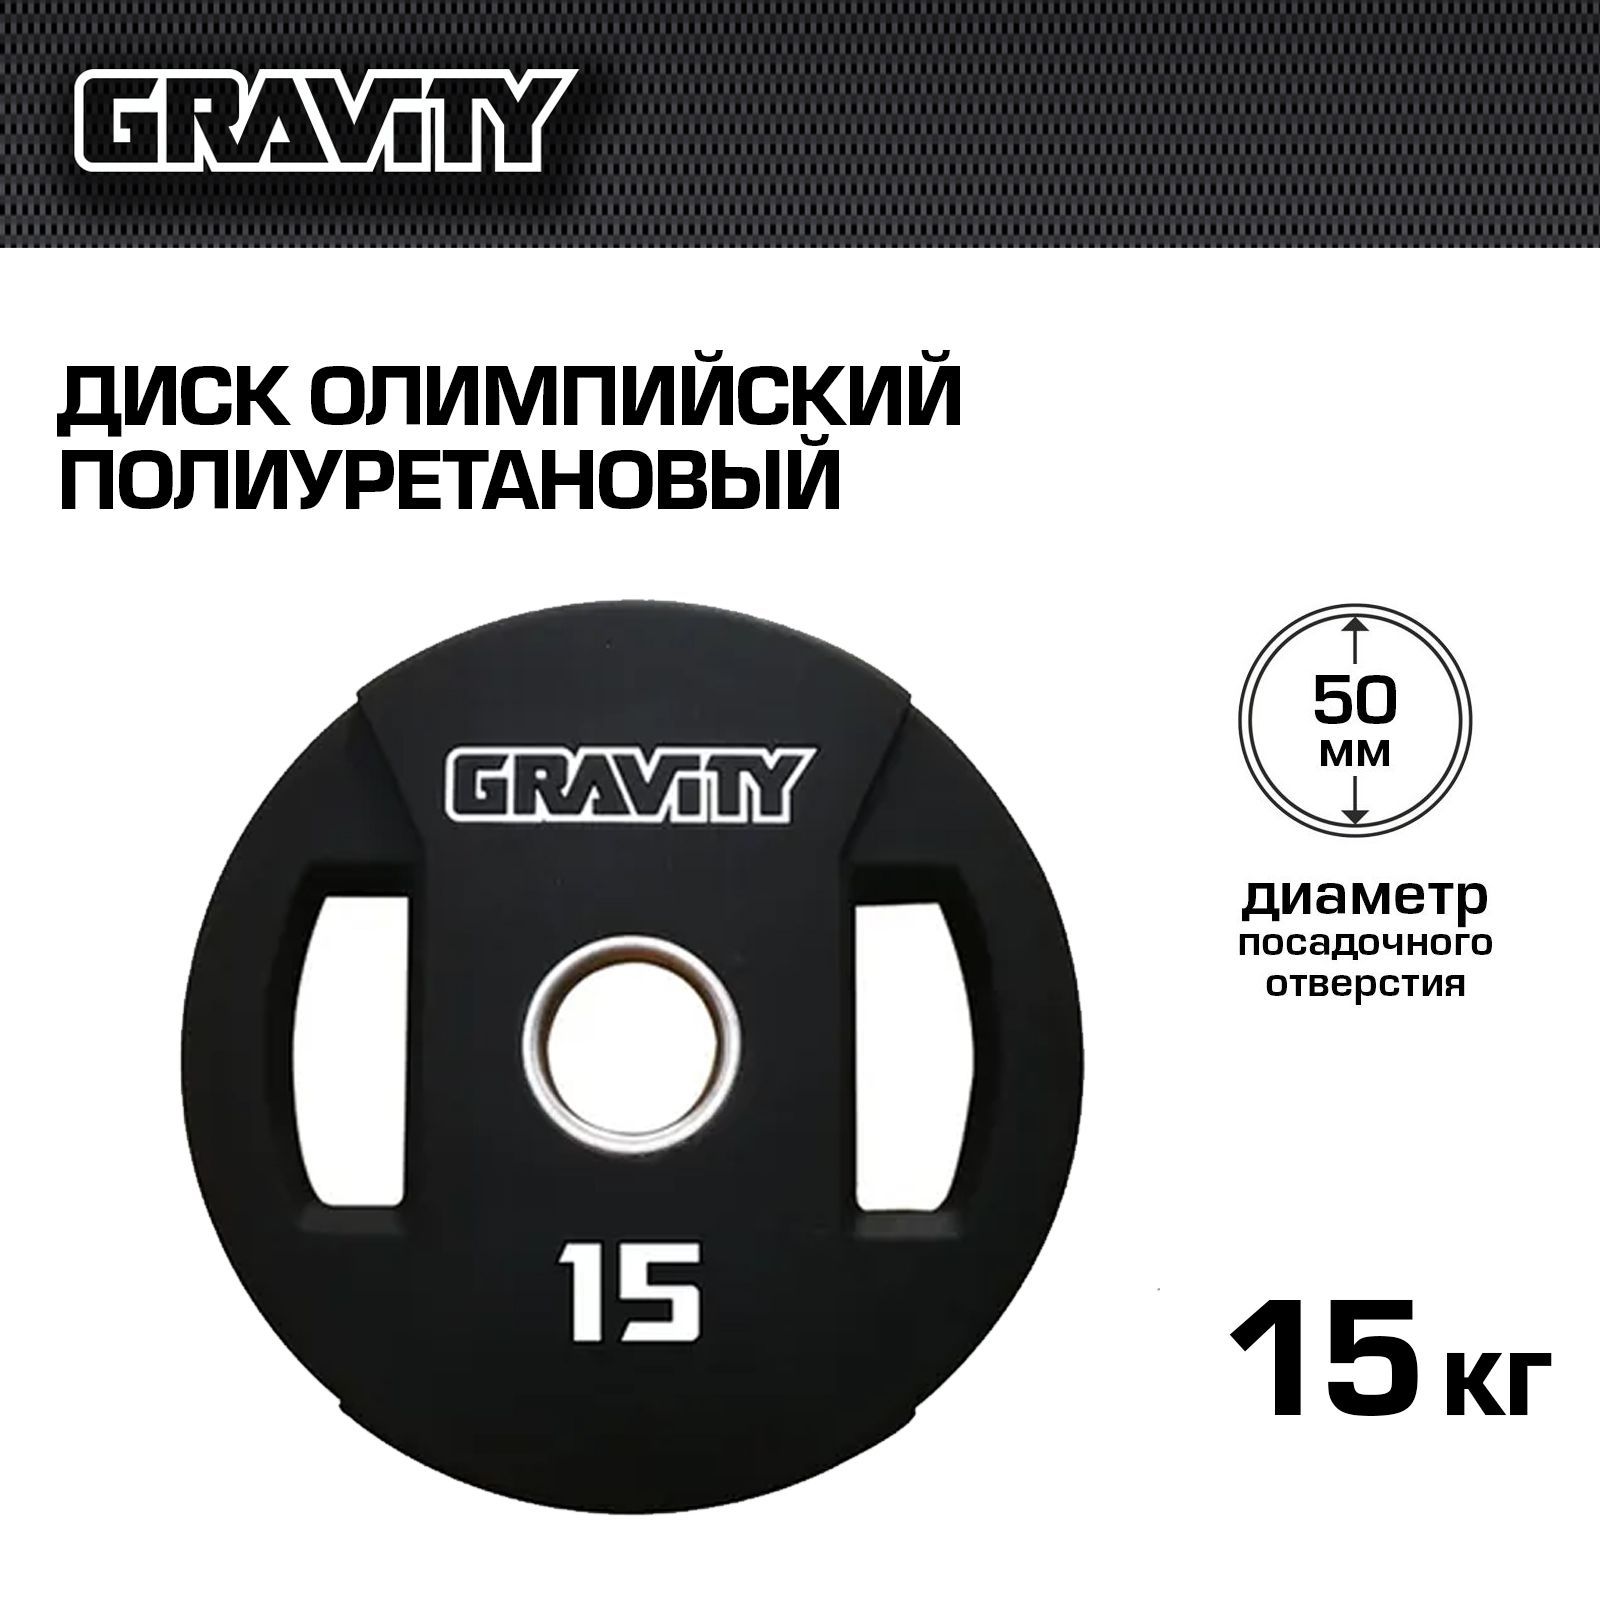 Диск олимпийский Gravity полиуретановый, 15 кг